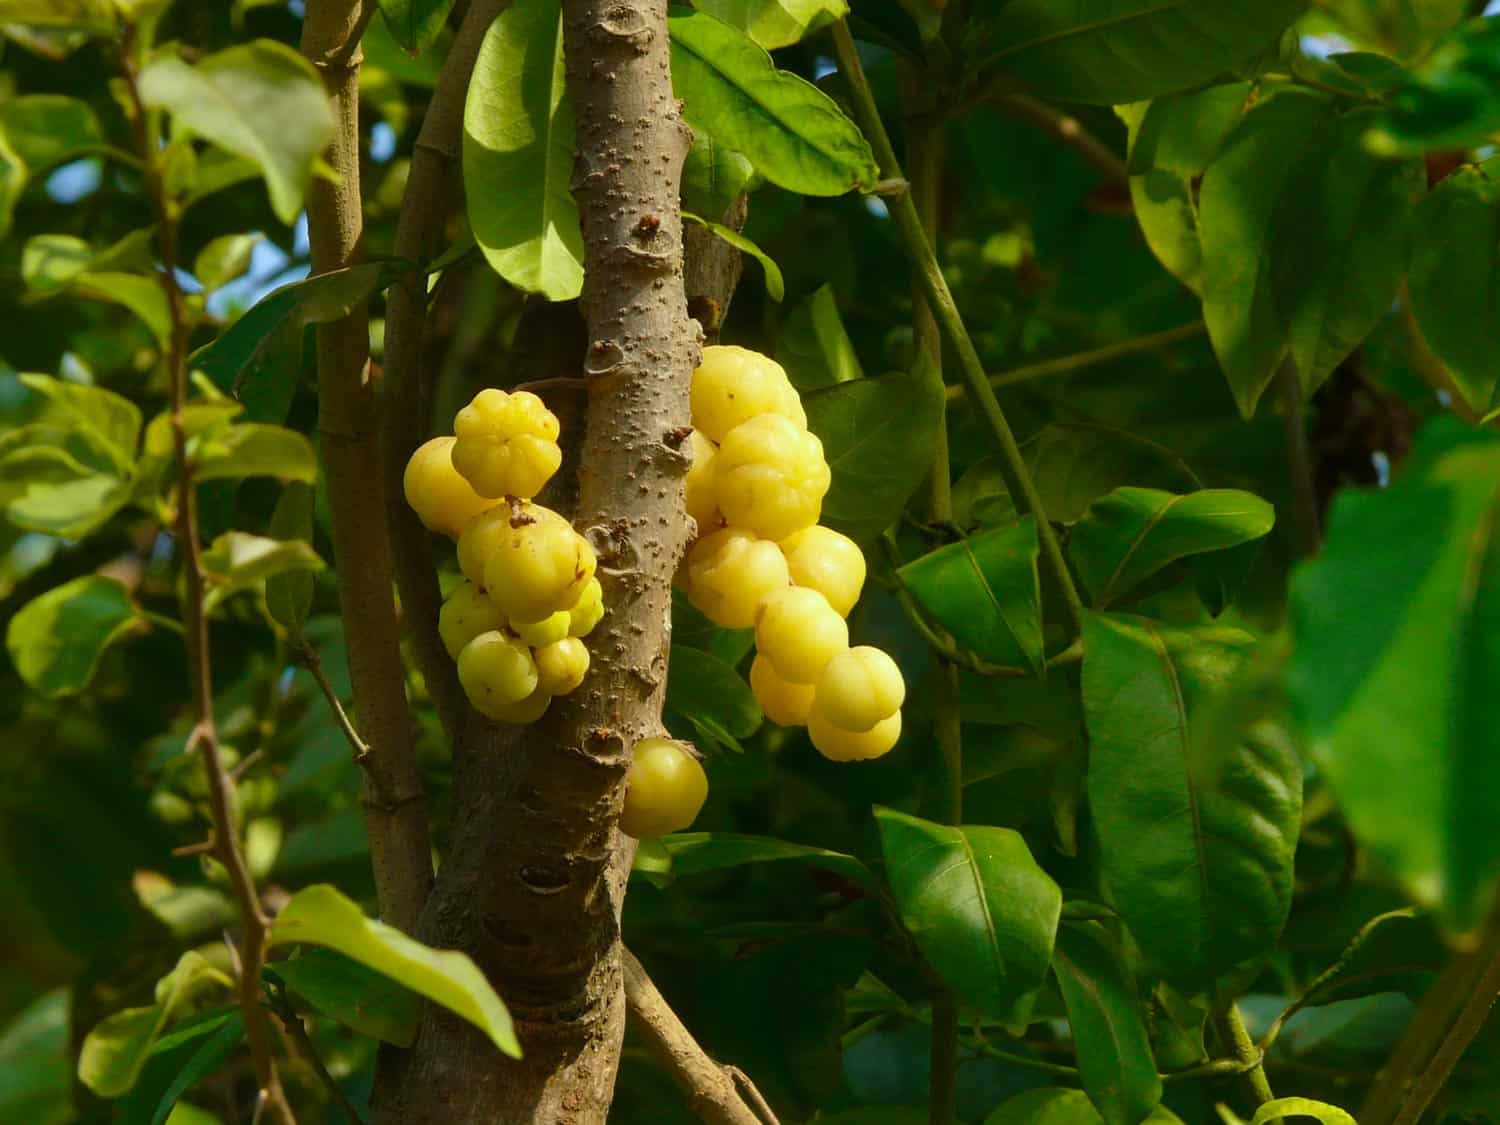 Jimbilin fruit tree